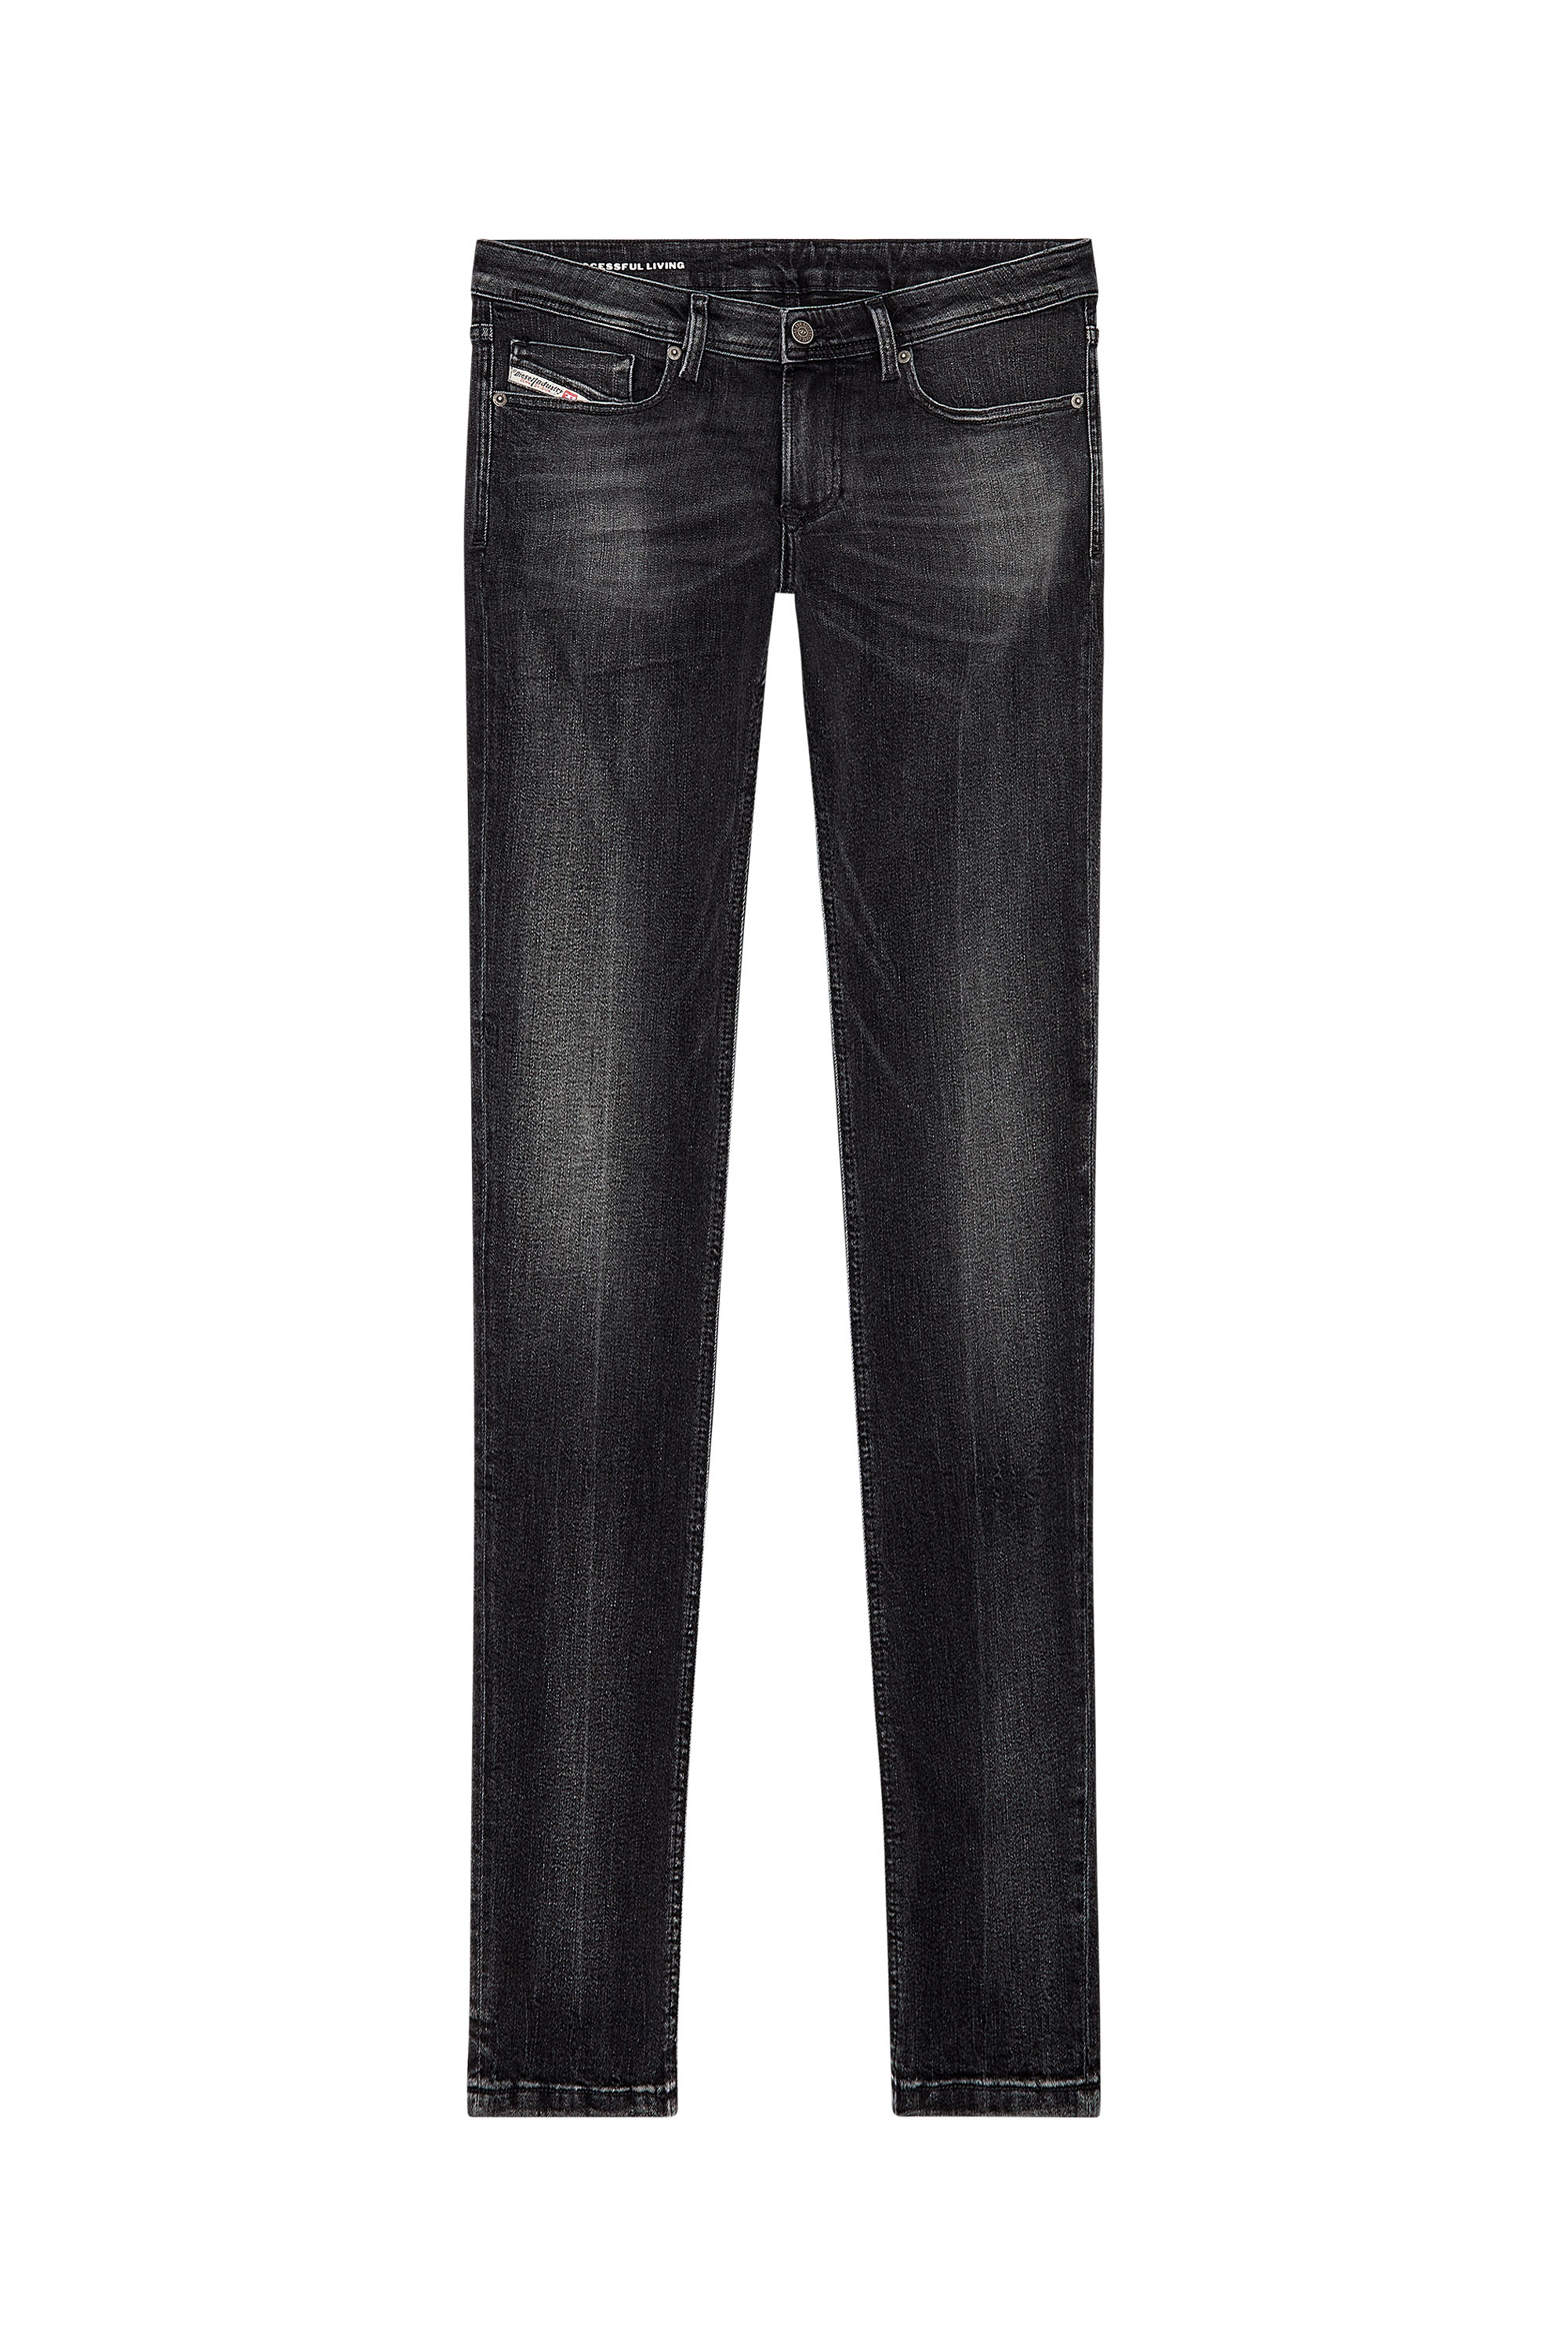 Diesel - Man Skinny Jeans 1979 Sleenker 0PFAX, Black/Dark grey - Image 3